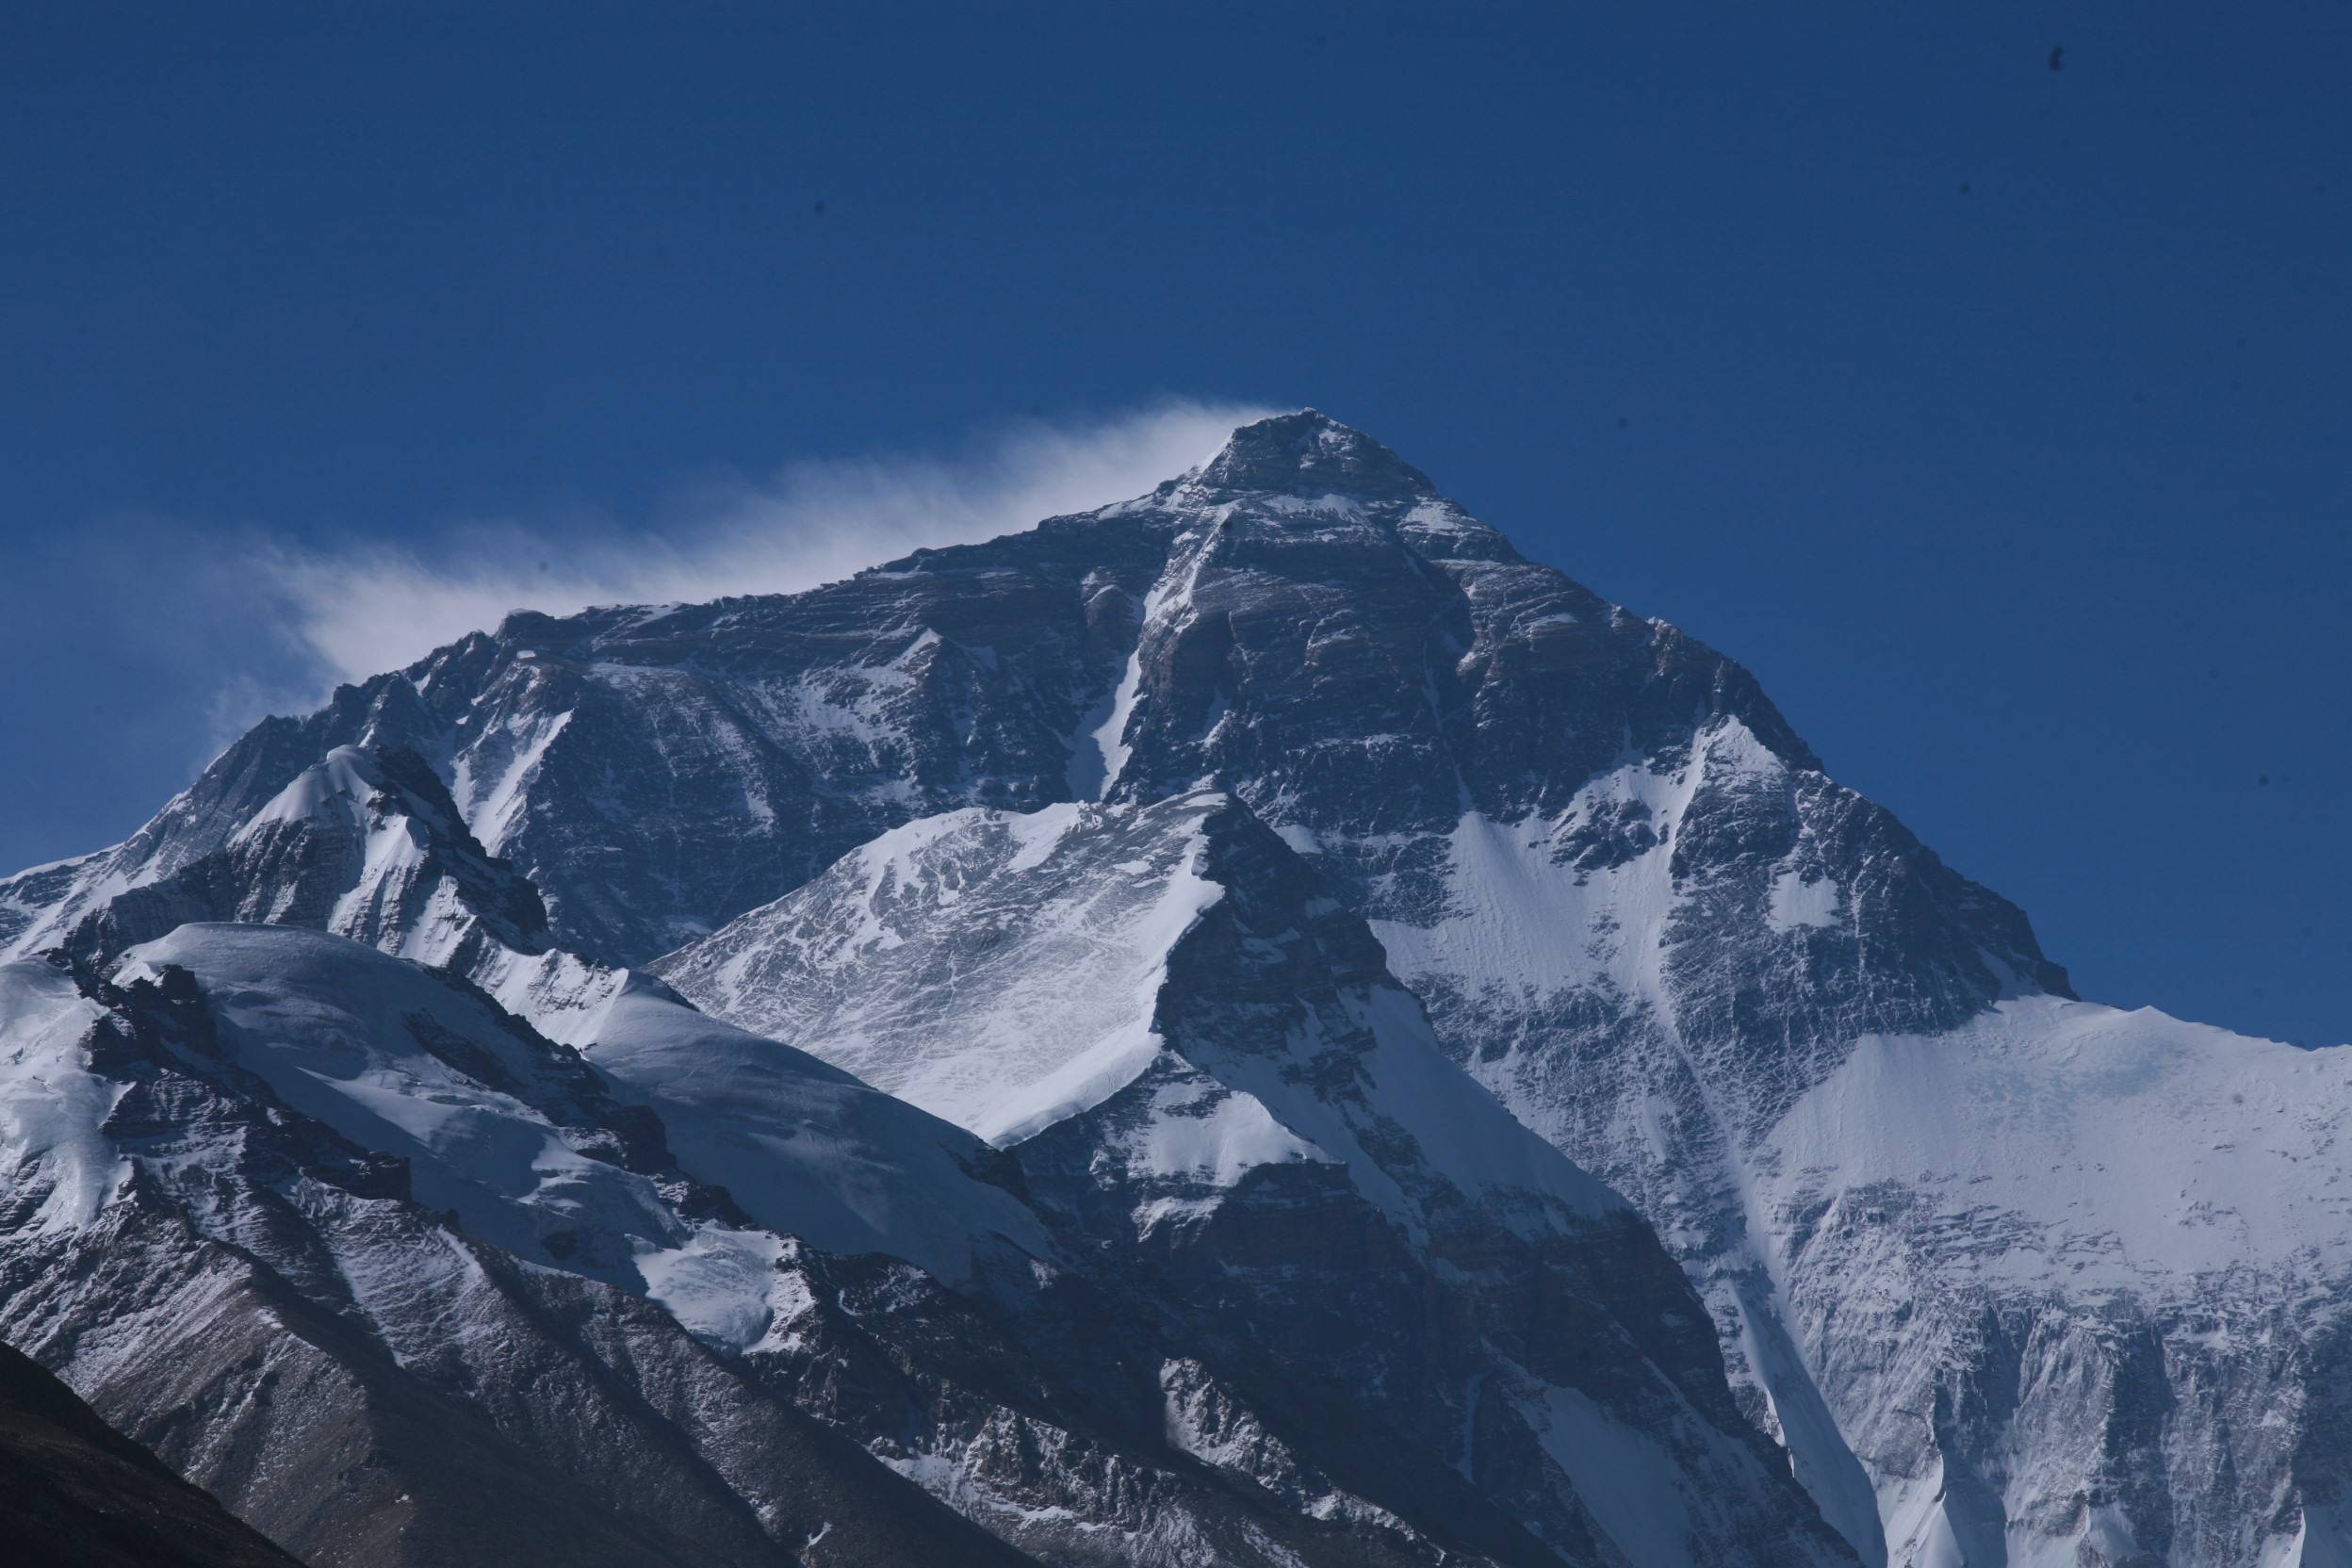 登珠峰大本营需要毅力和勇气,对珠峰只有敬仰和仰望